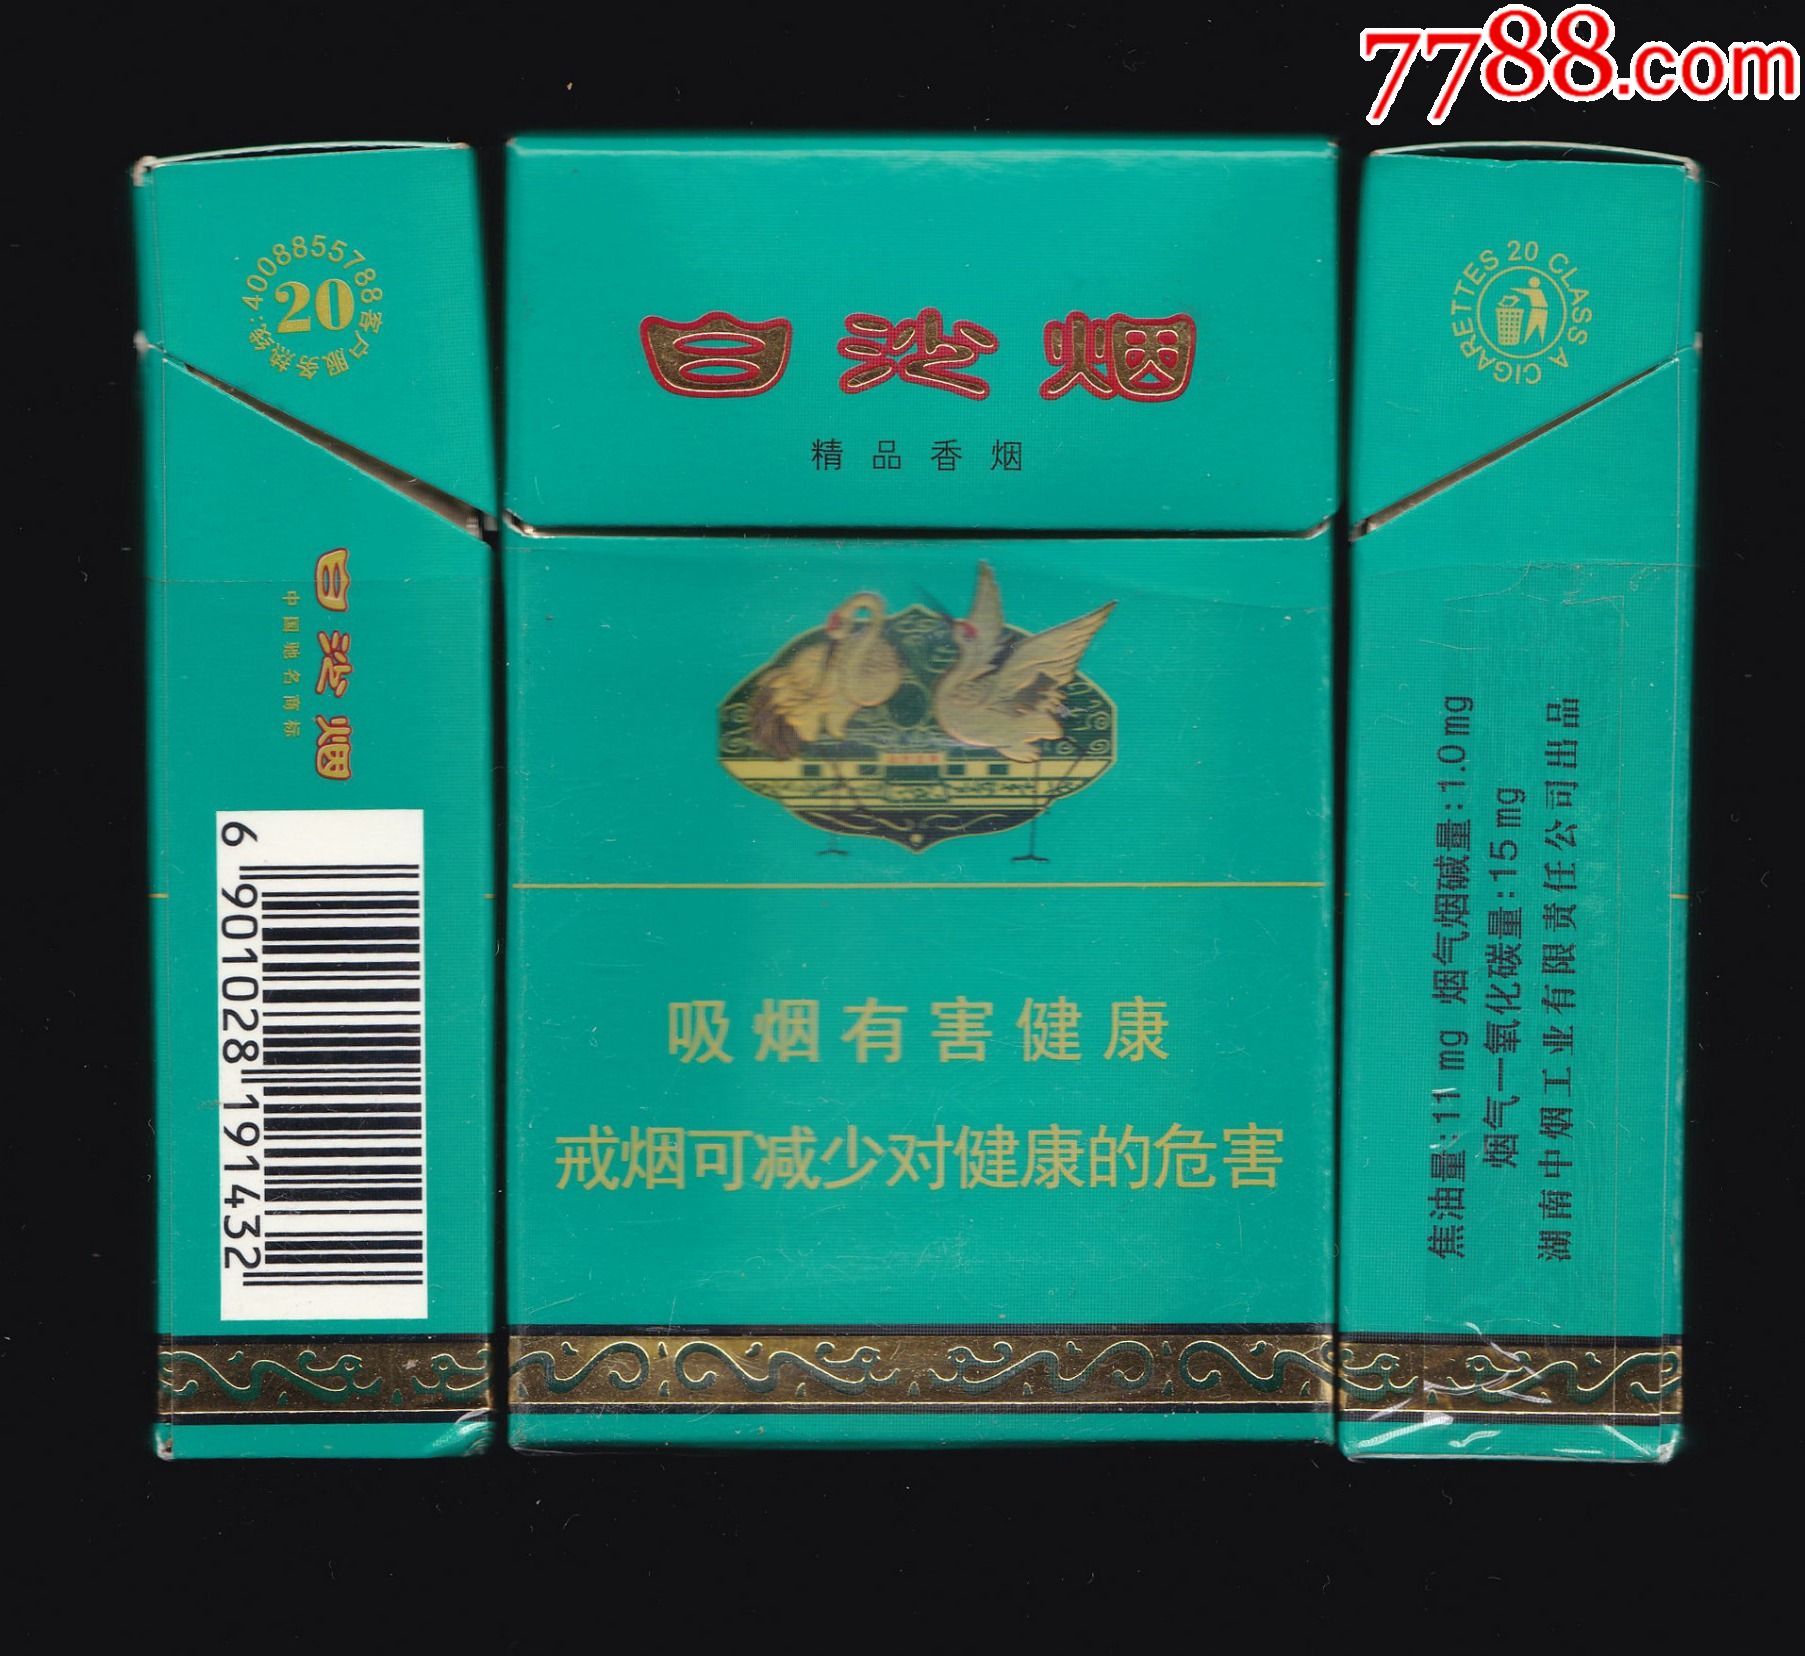 青绿色烟盒的香烟图片